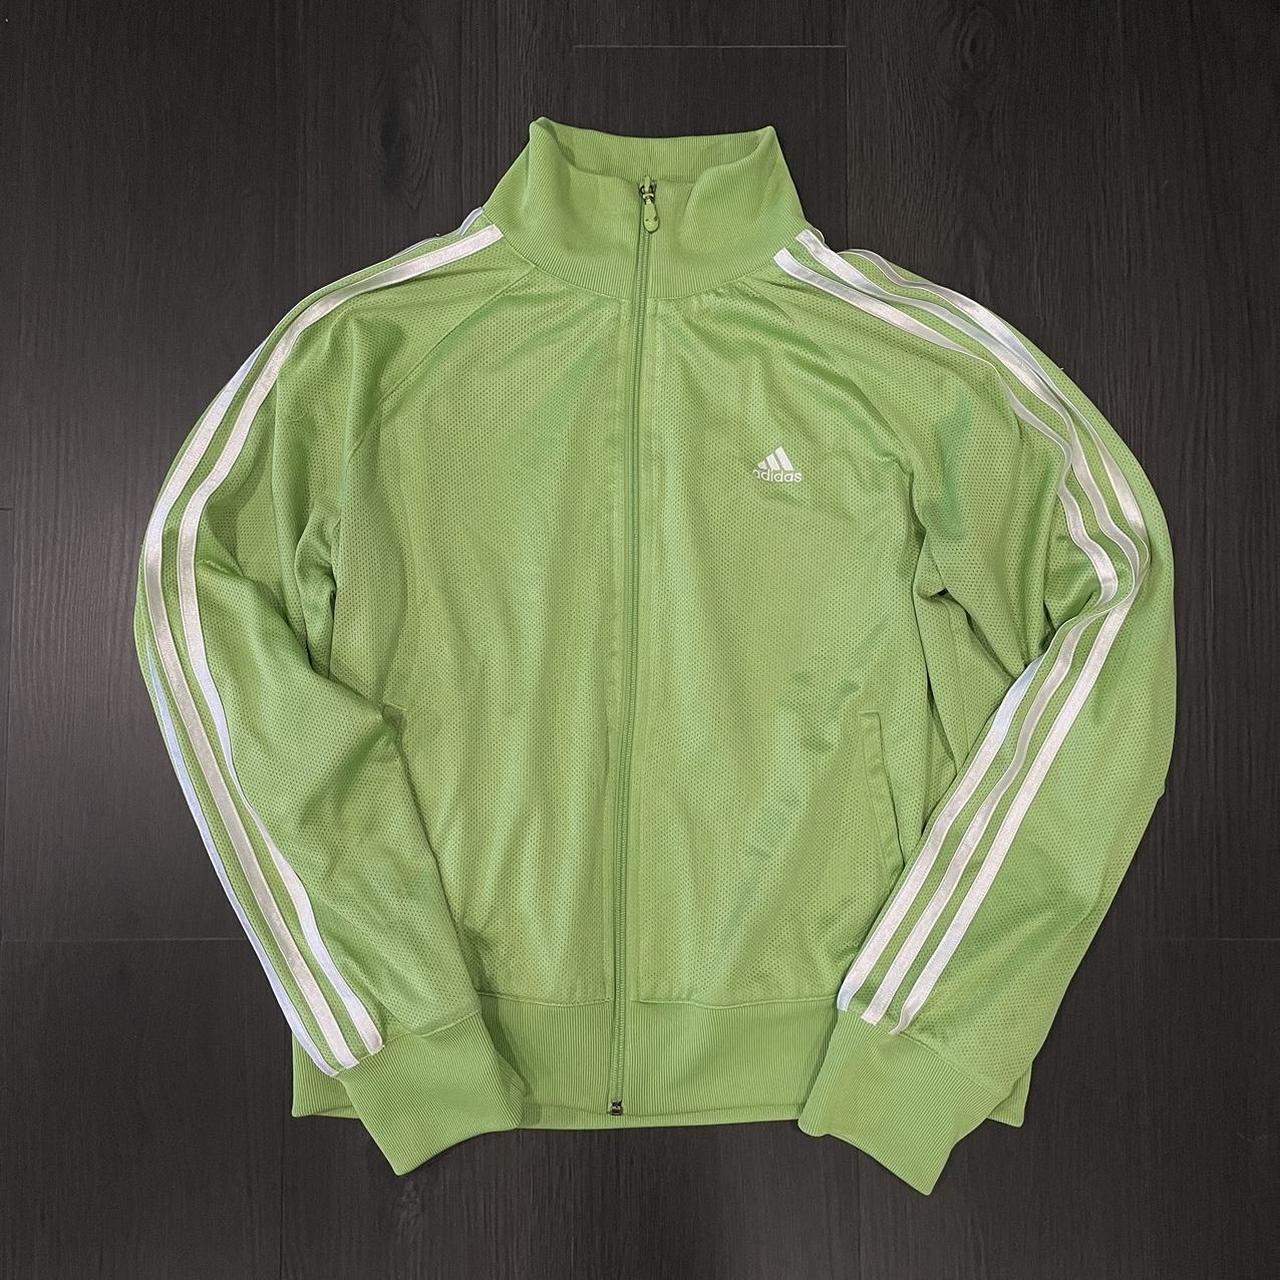 Y2K Lime Green Adidas Track Jacket. - fits men's - Depop